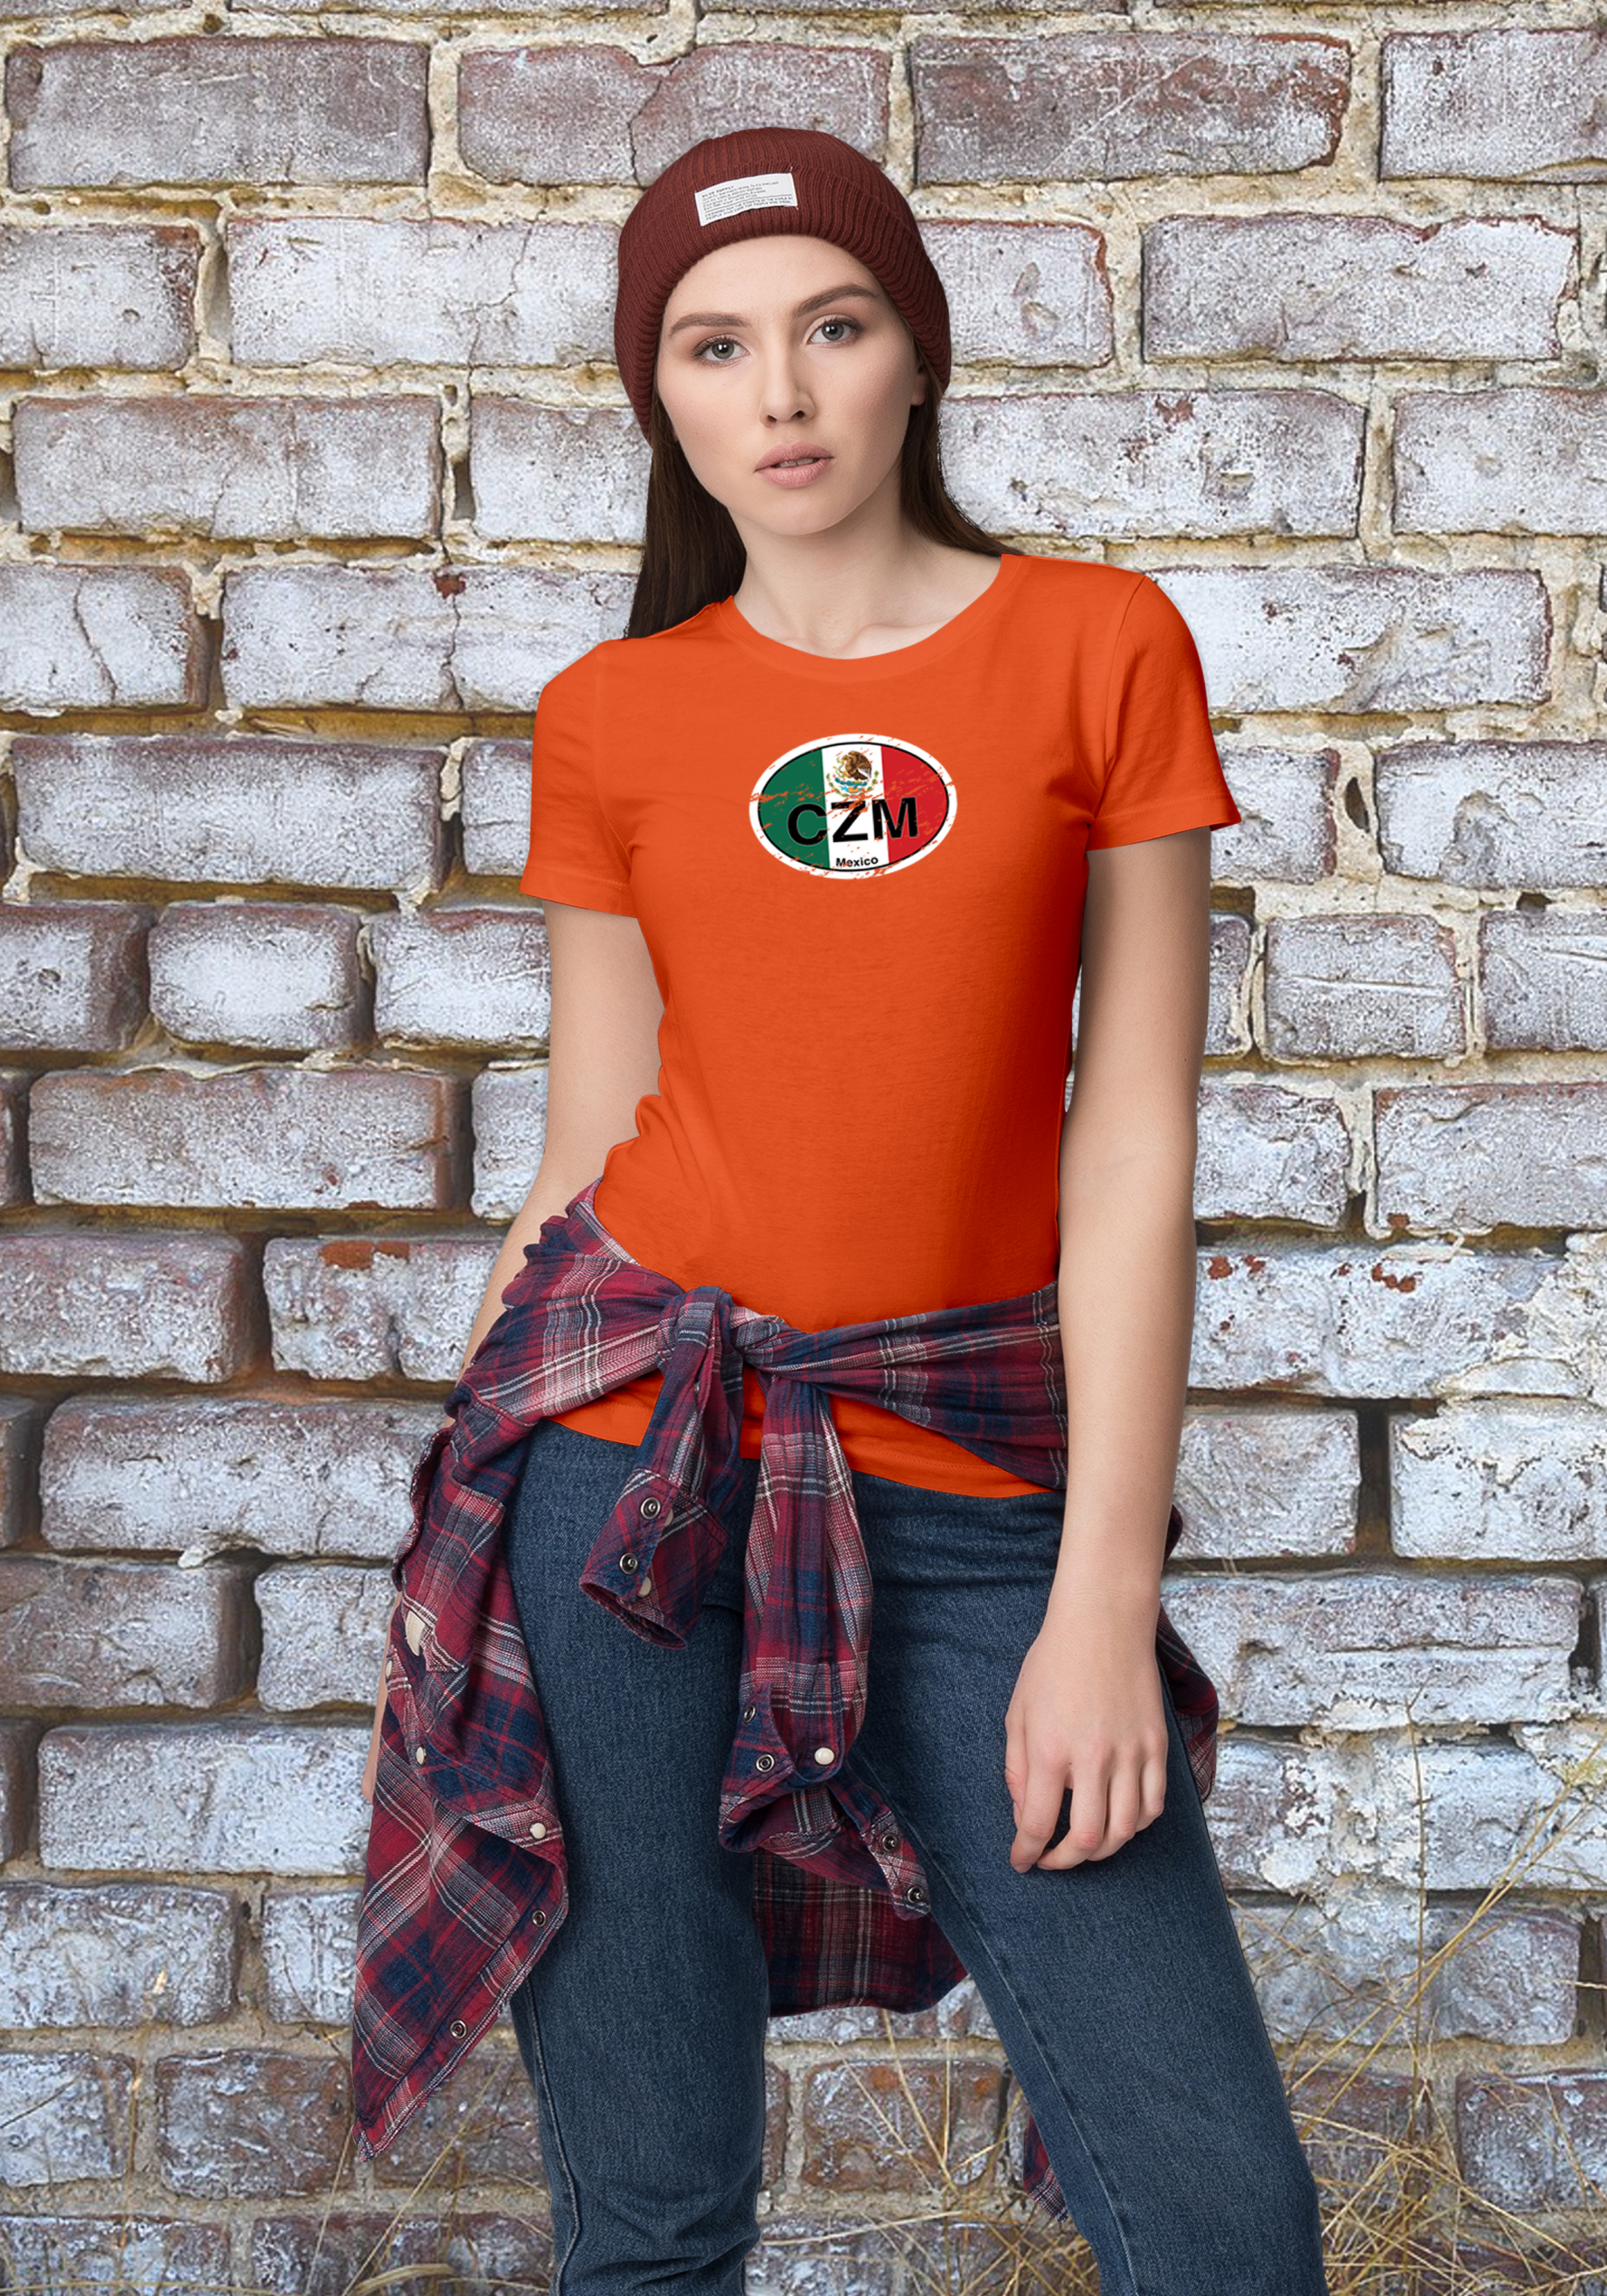 Cozumel Women's Flag T-Shirt Souvenirs - My Destination Location